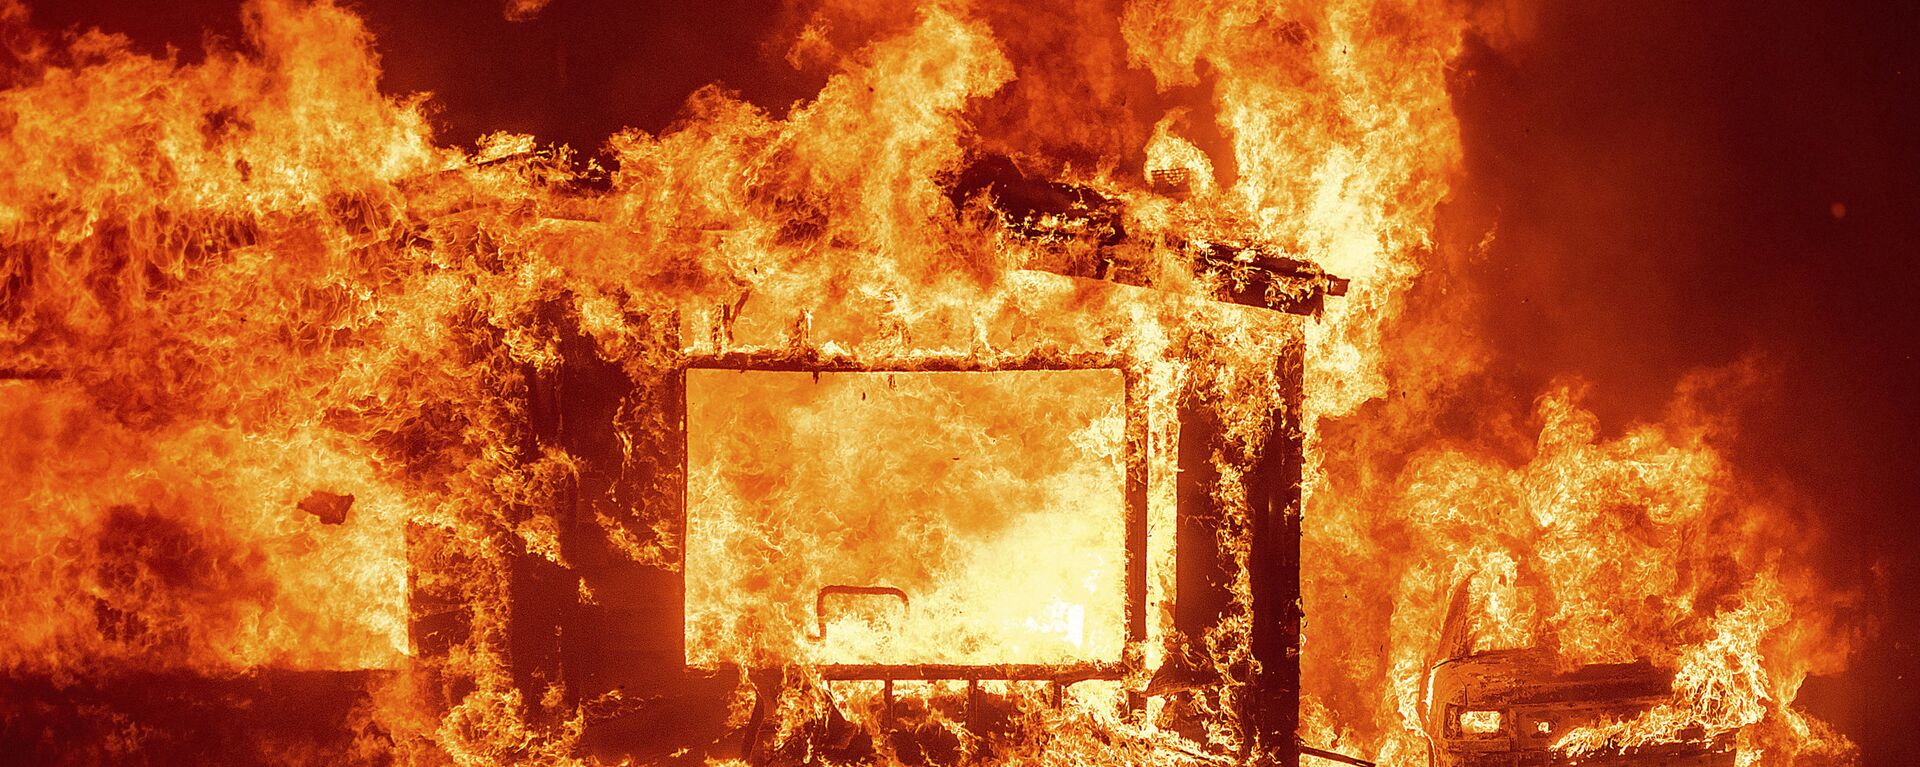 Горящие дом и автомобиль в округе Напа в Калифорнии во время лесных пожаров - Sputnik Արմենիա, 1920, 13.09.2020